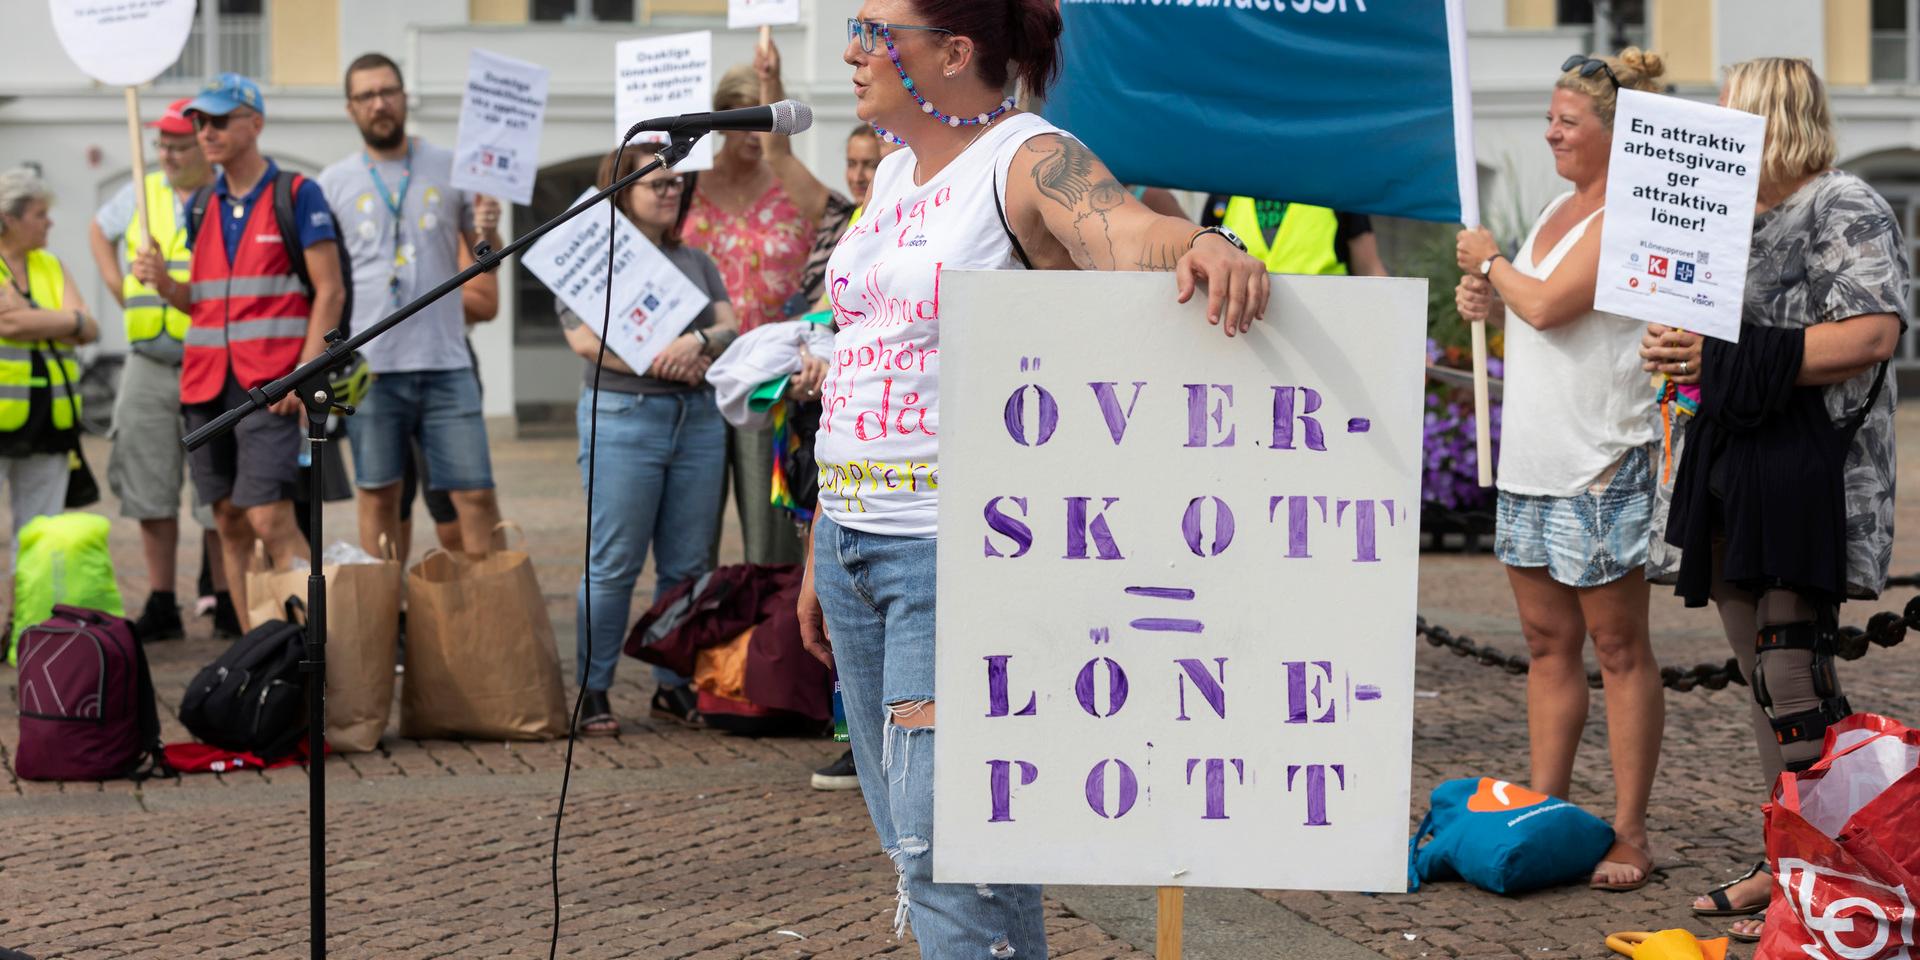 Måndagen den 15 augusti samlades kommunalanställda på Gustav Adolfs torg för att demonstrera för högre löner. Kristina Ramstedt, ordförande för Vision i Göteborg, var en av arrangörerna.